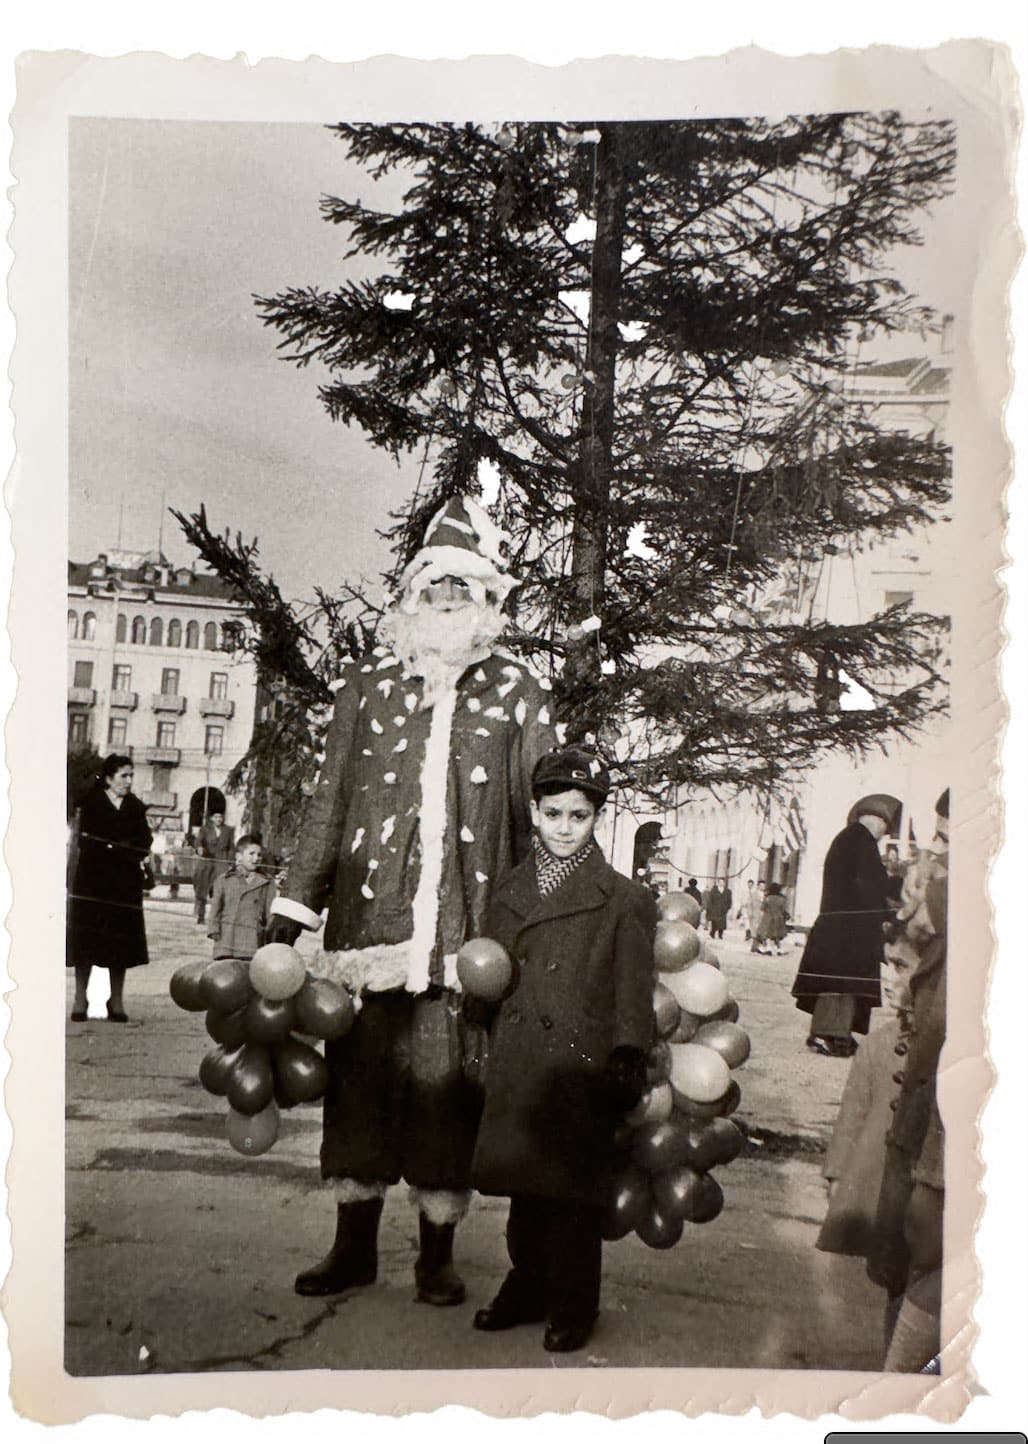 2284 - Τα ασπρόμαυρα Χριστούγεννα της Θεσσαλονίκης μέσα από τη συλλογή του Αρη Παπατζήκα